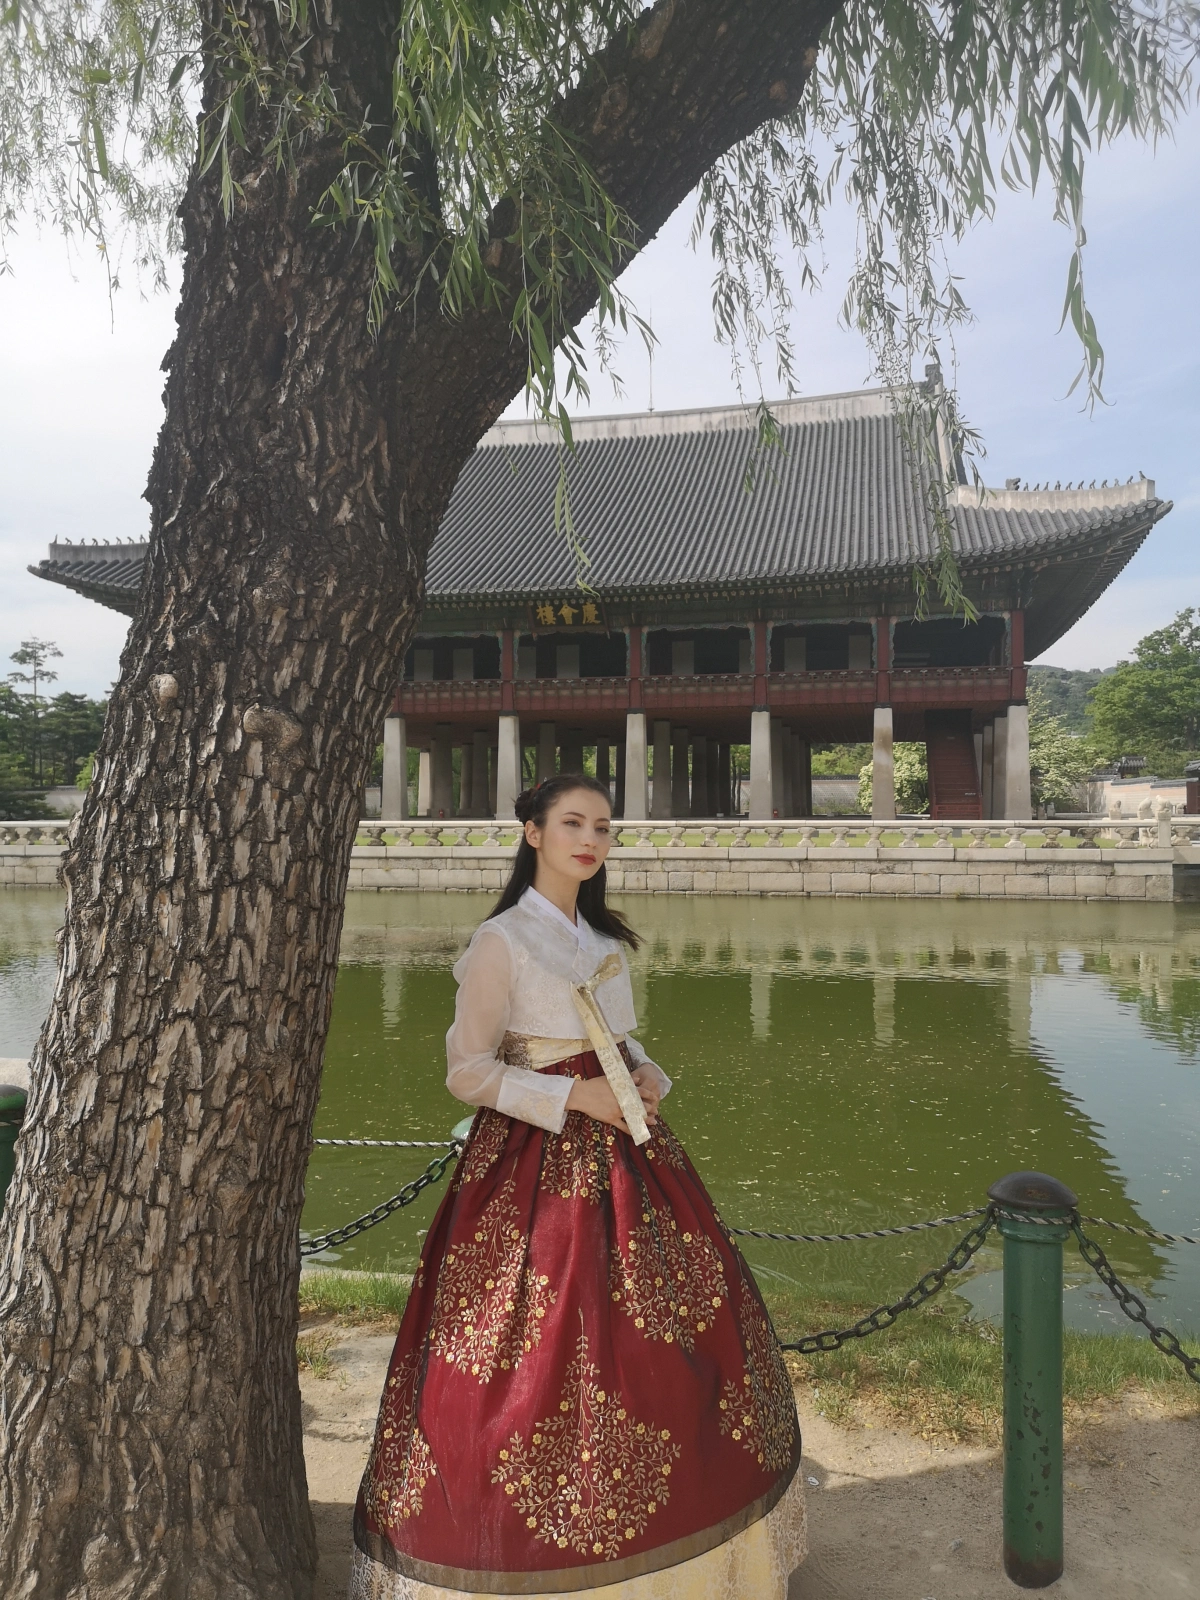 Koreai kampuszkaland – magyar lányként egy koreai egyetemen (1. rész)